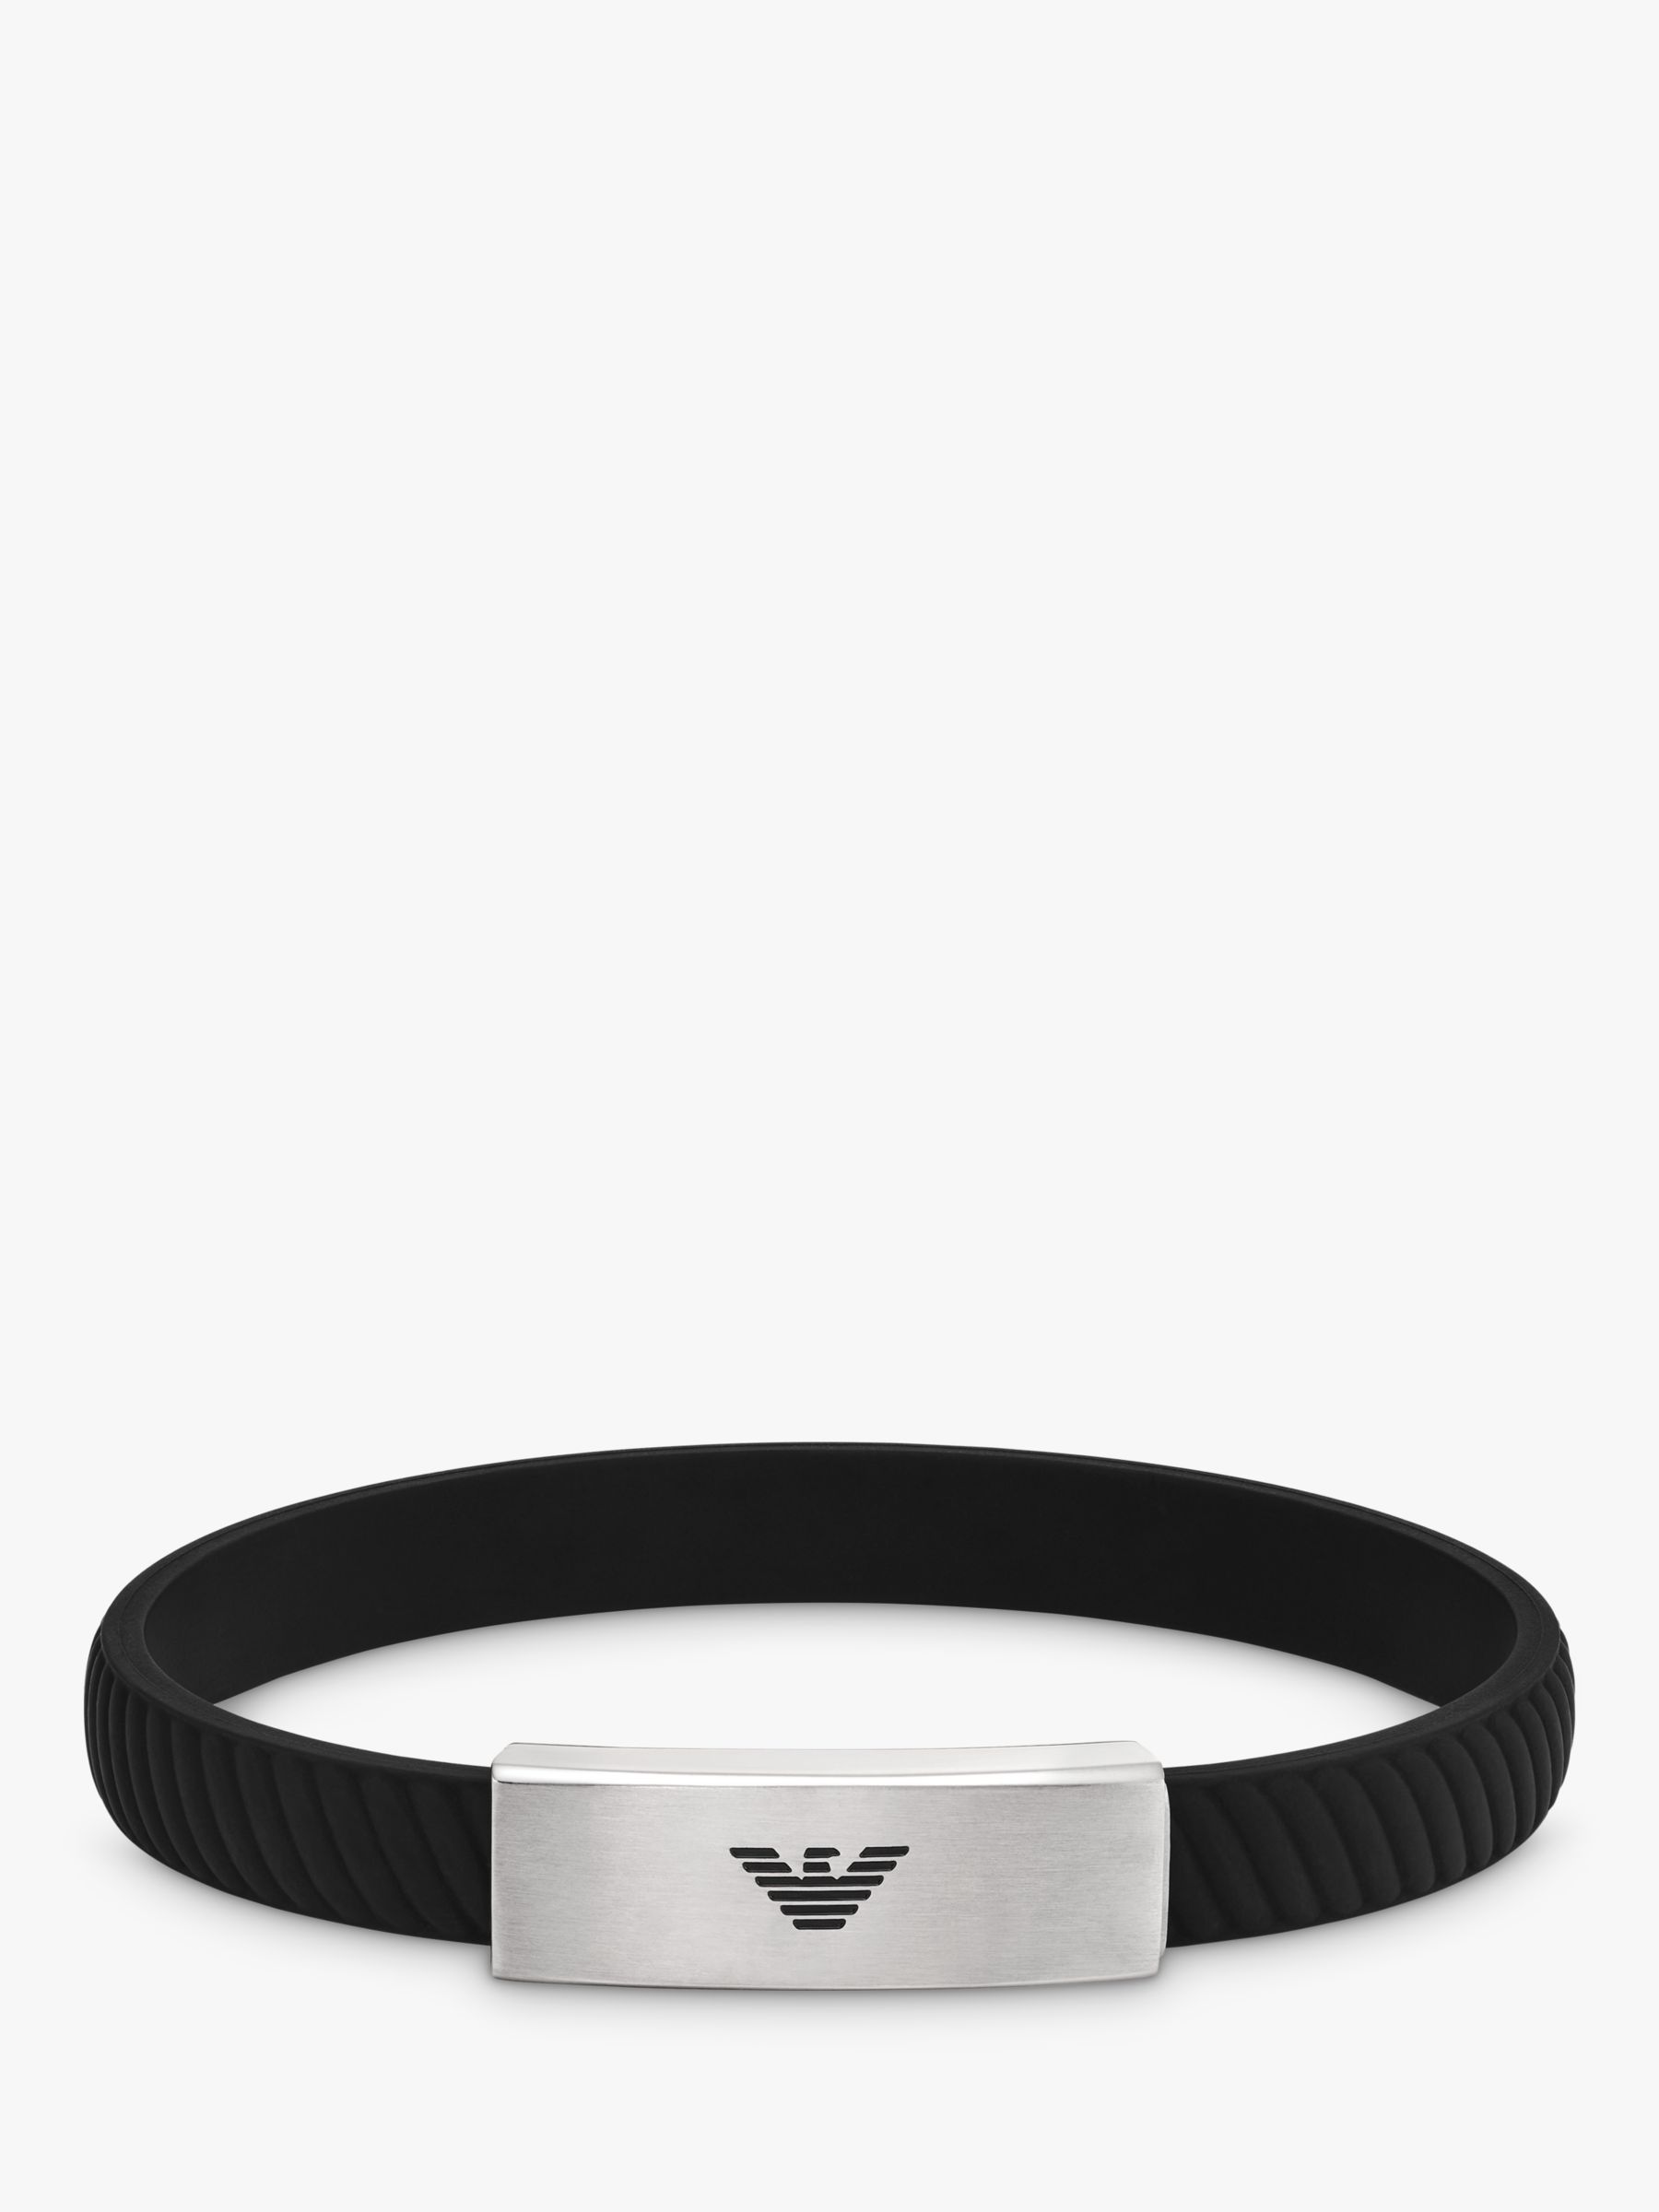 Emporio Armani Men's ID Textured Silicone Strap Bracelet, Silver/Black ...